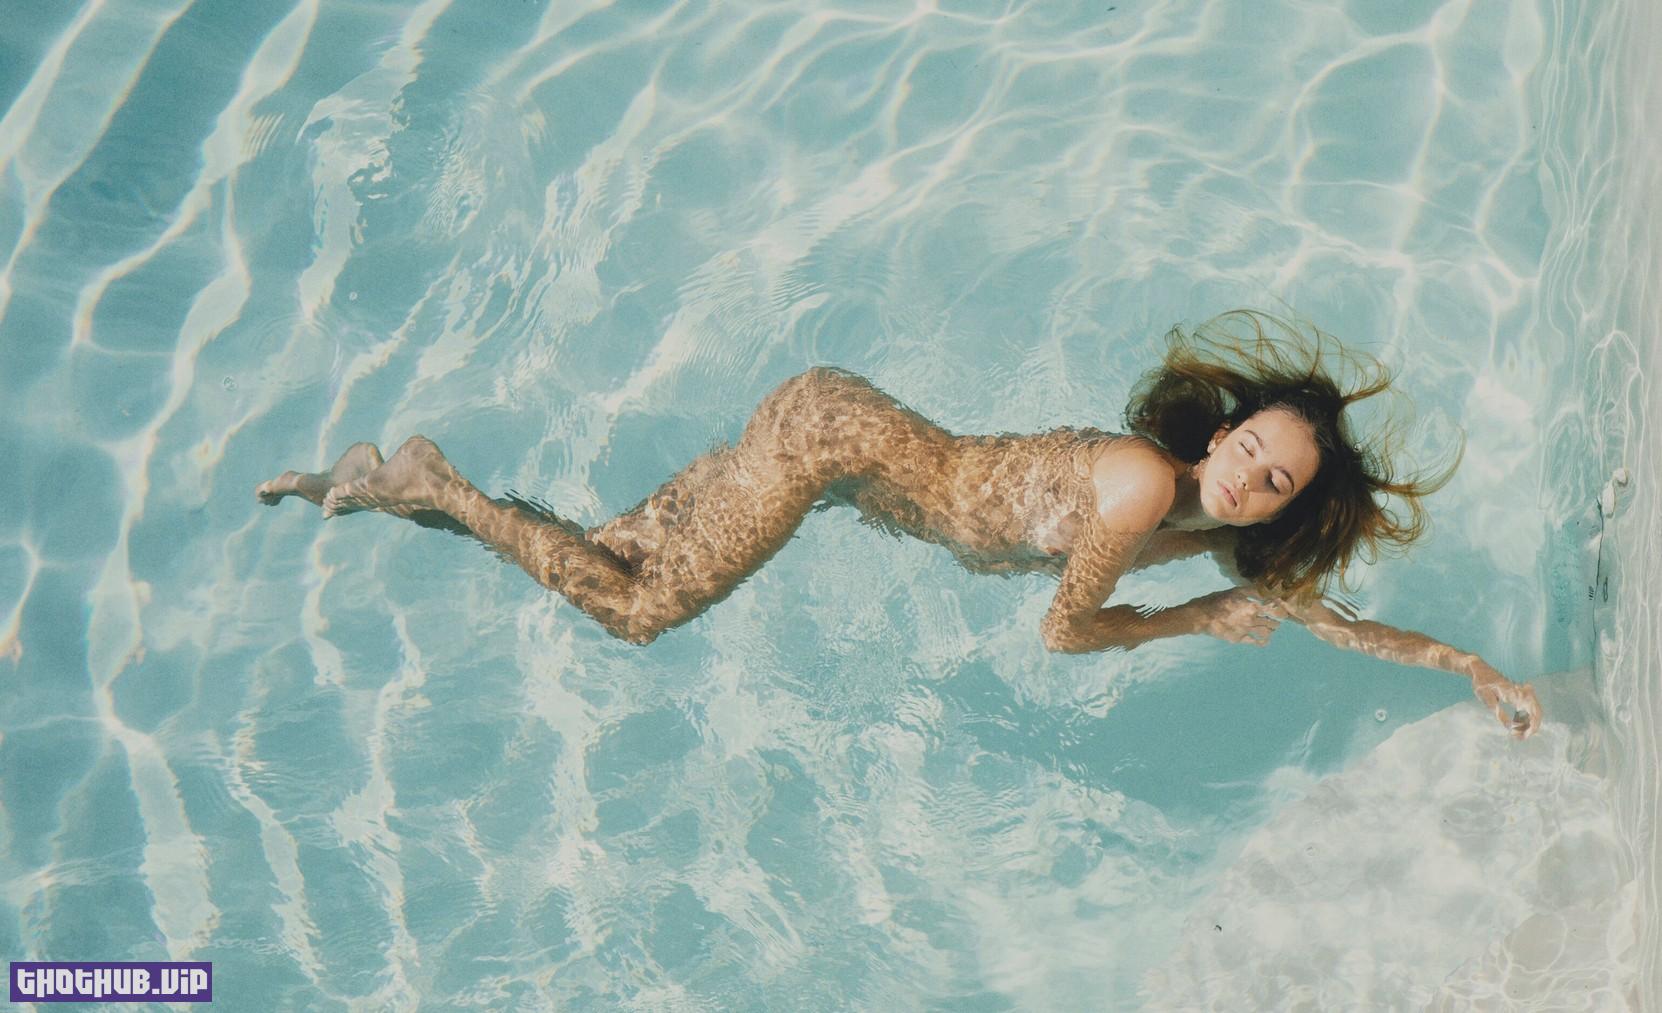 Inka Williams Nude In The Pool